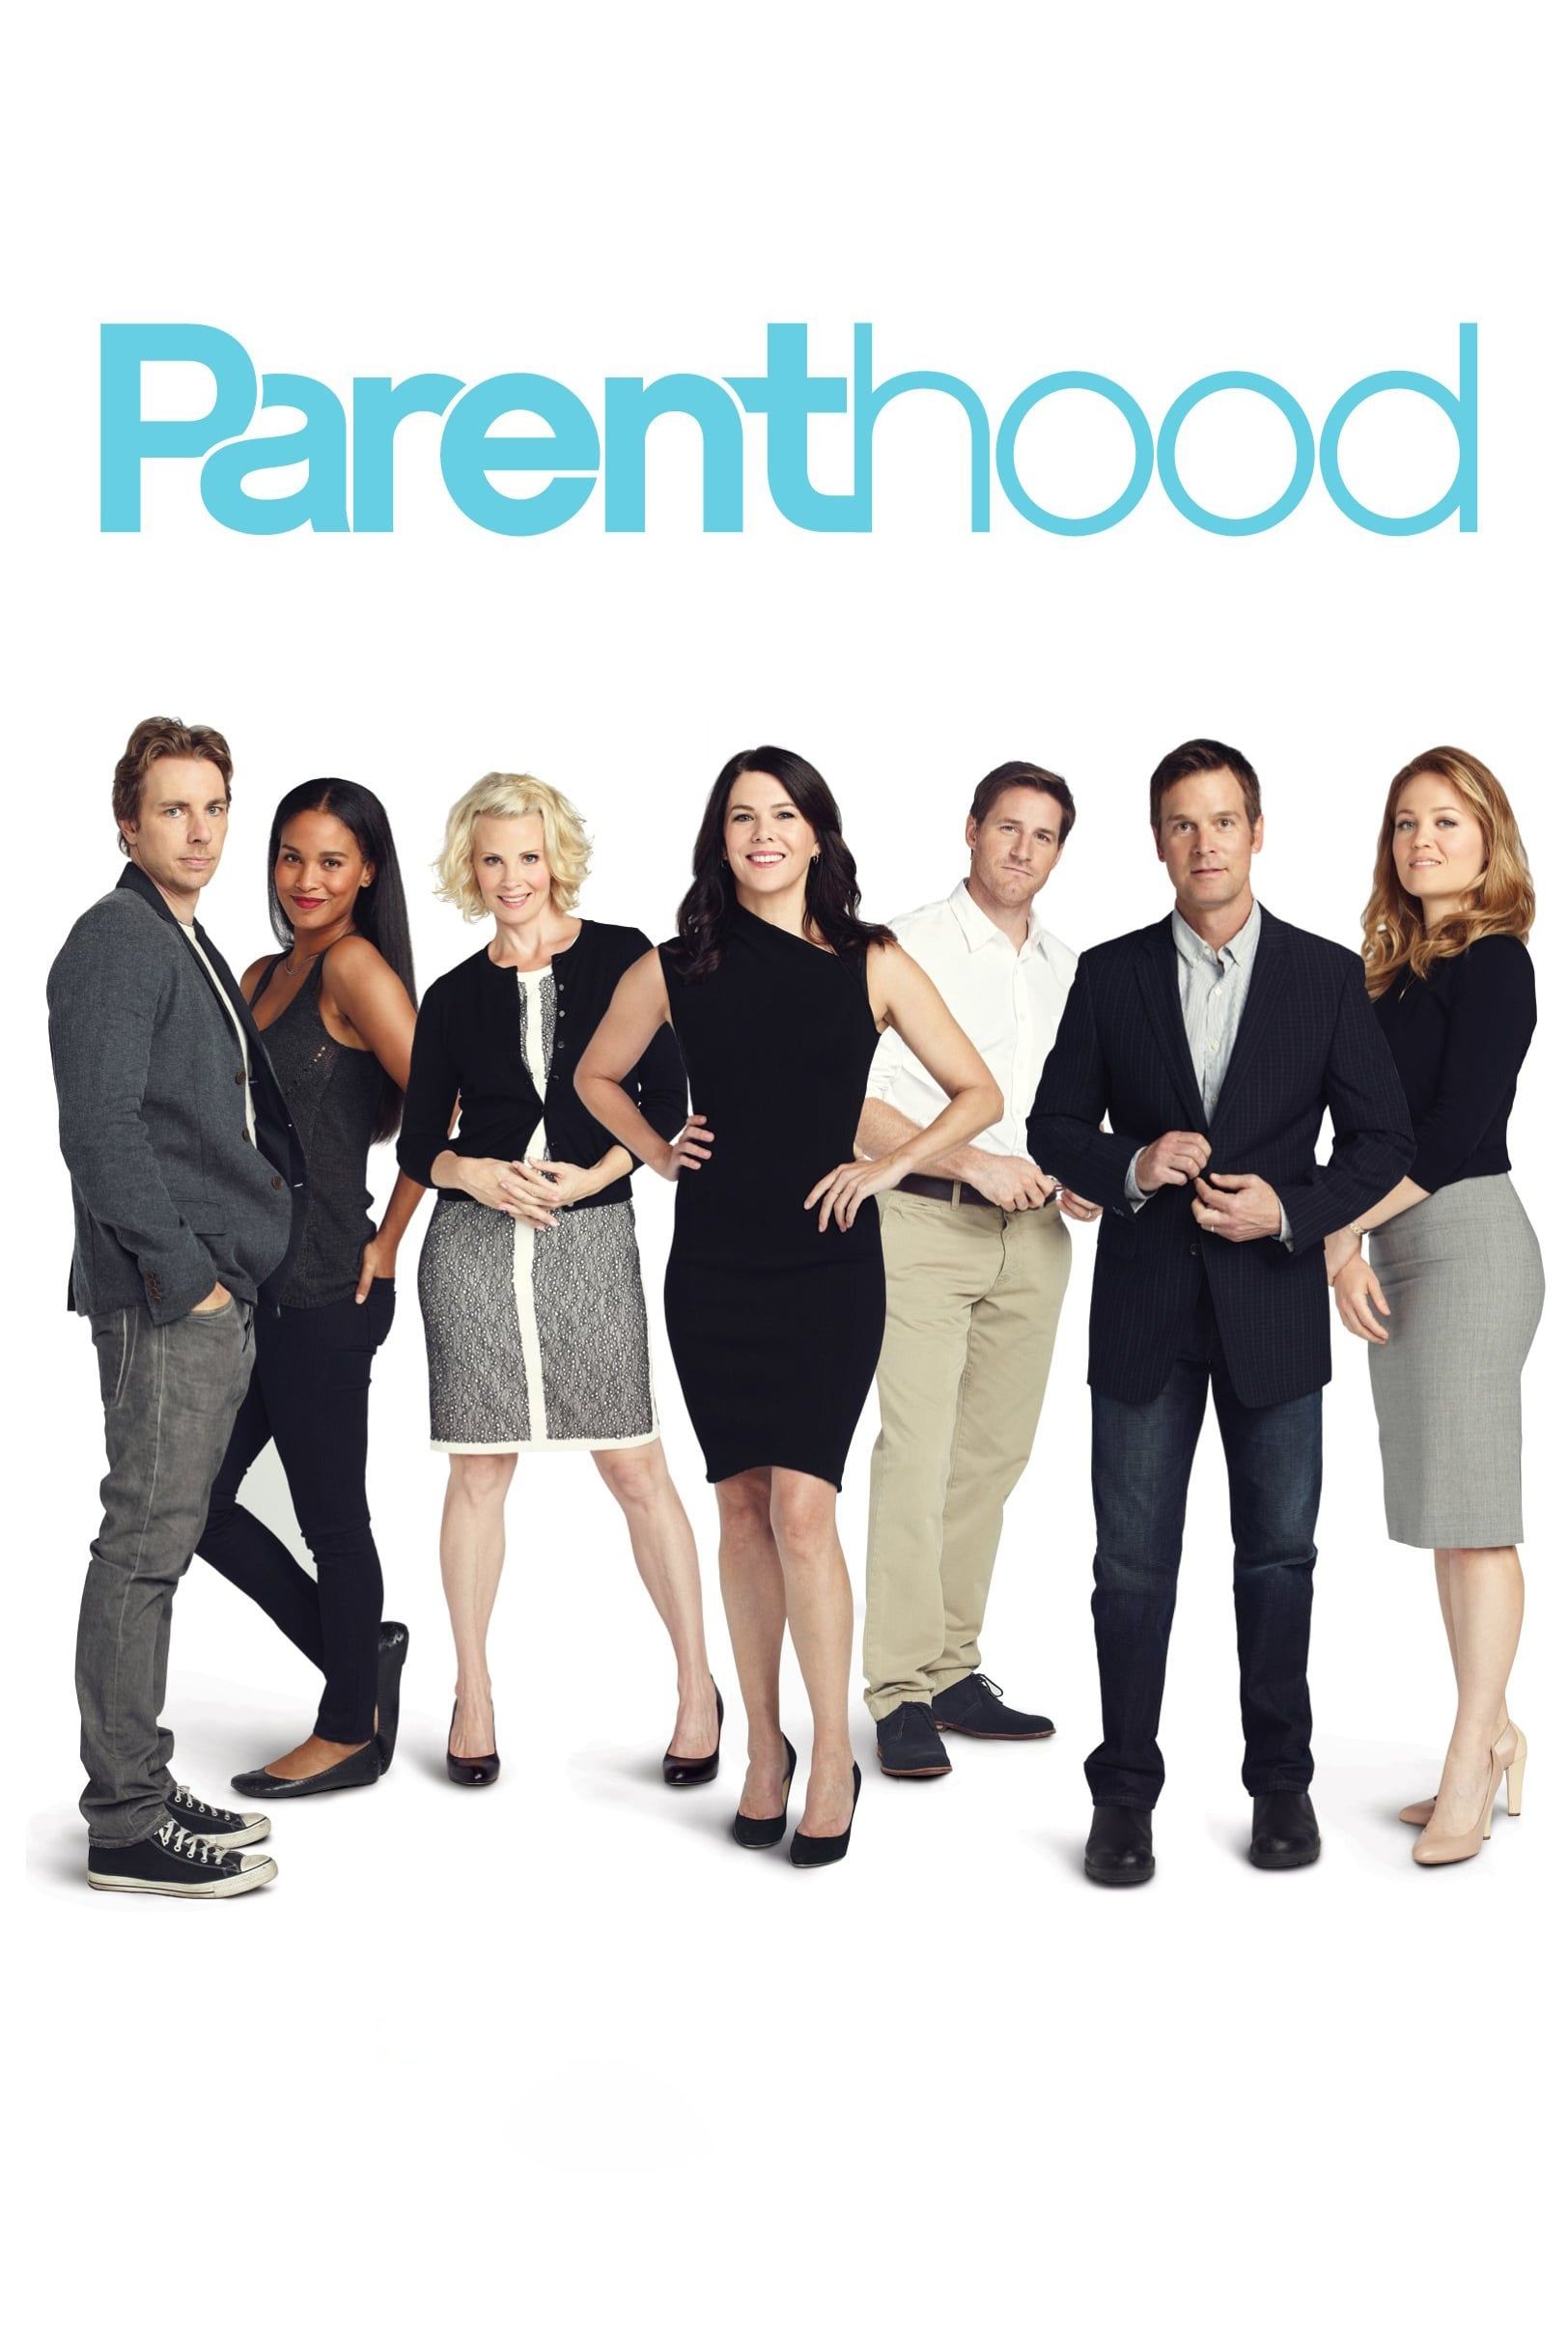 Parenthood Show poster